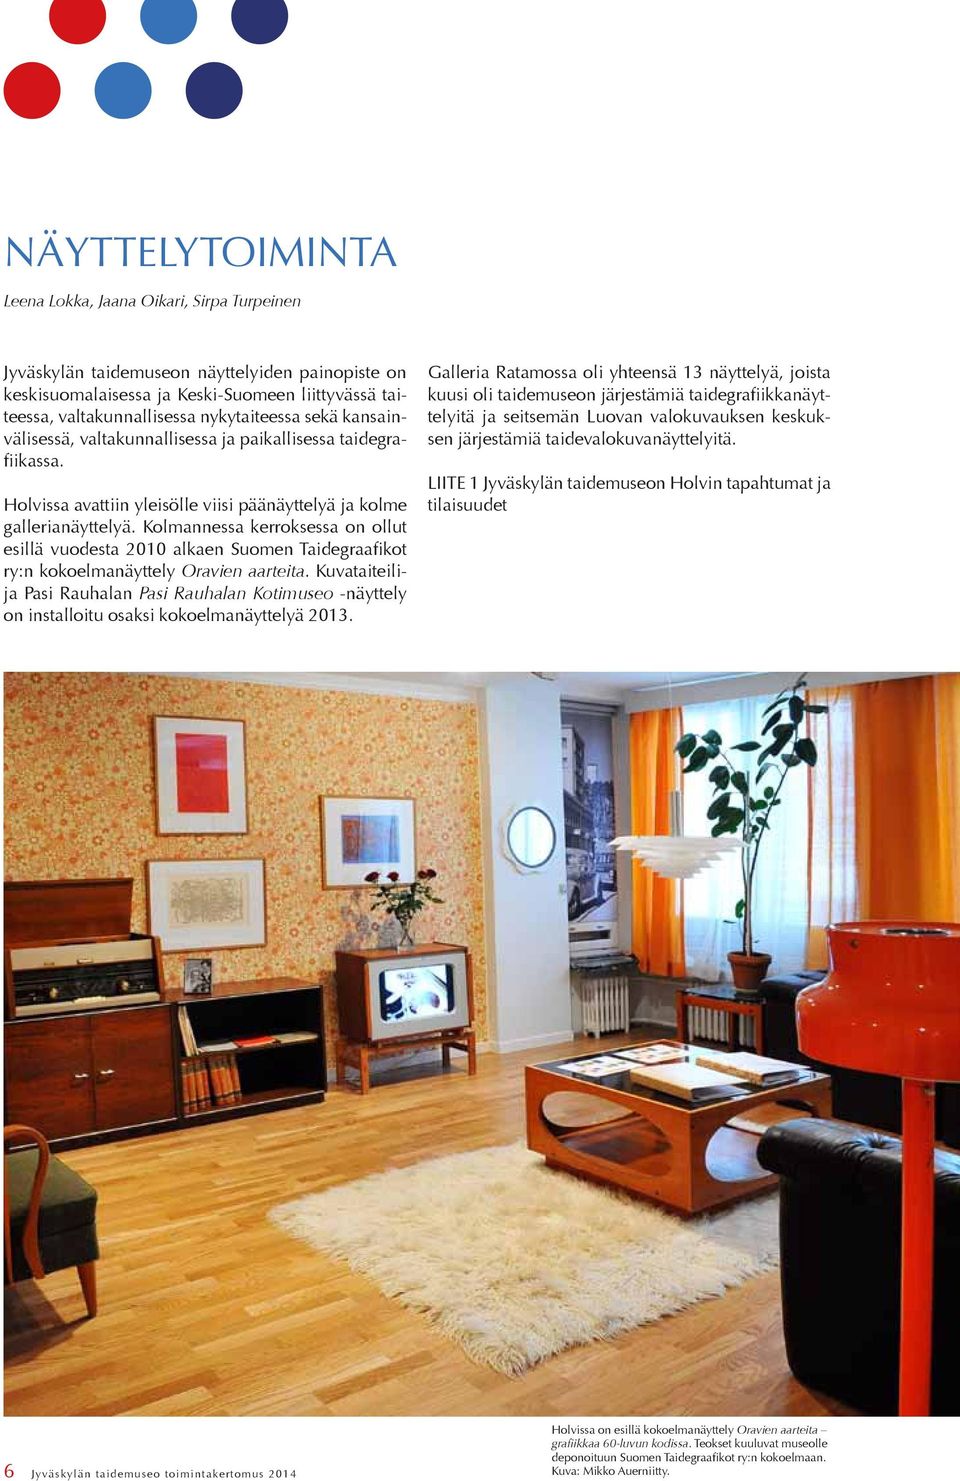 Kolmannessa kerroksessa on ollut esillä vuodesta 2010 alkaen Suomen Taidegraafikot ry:n kokoelmanäyttely Oravien aarteita.